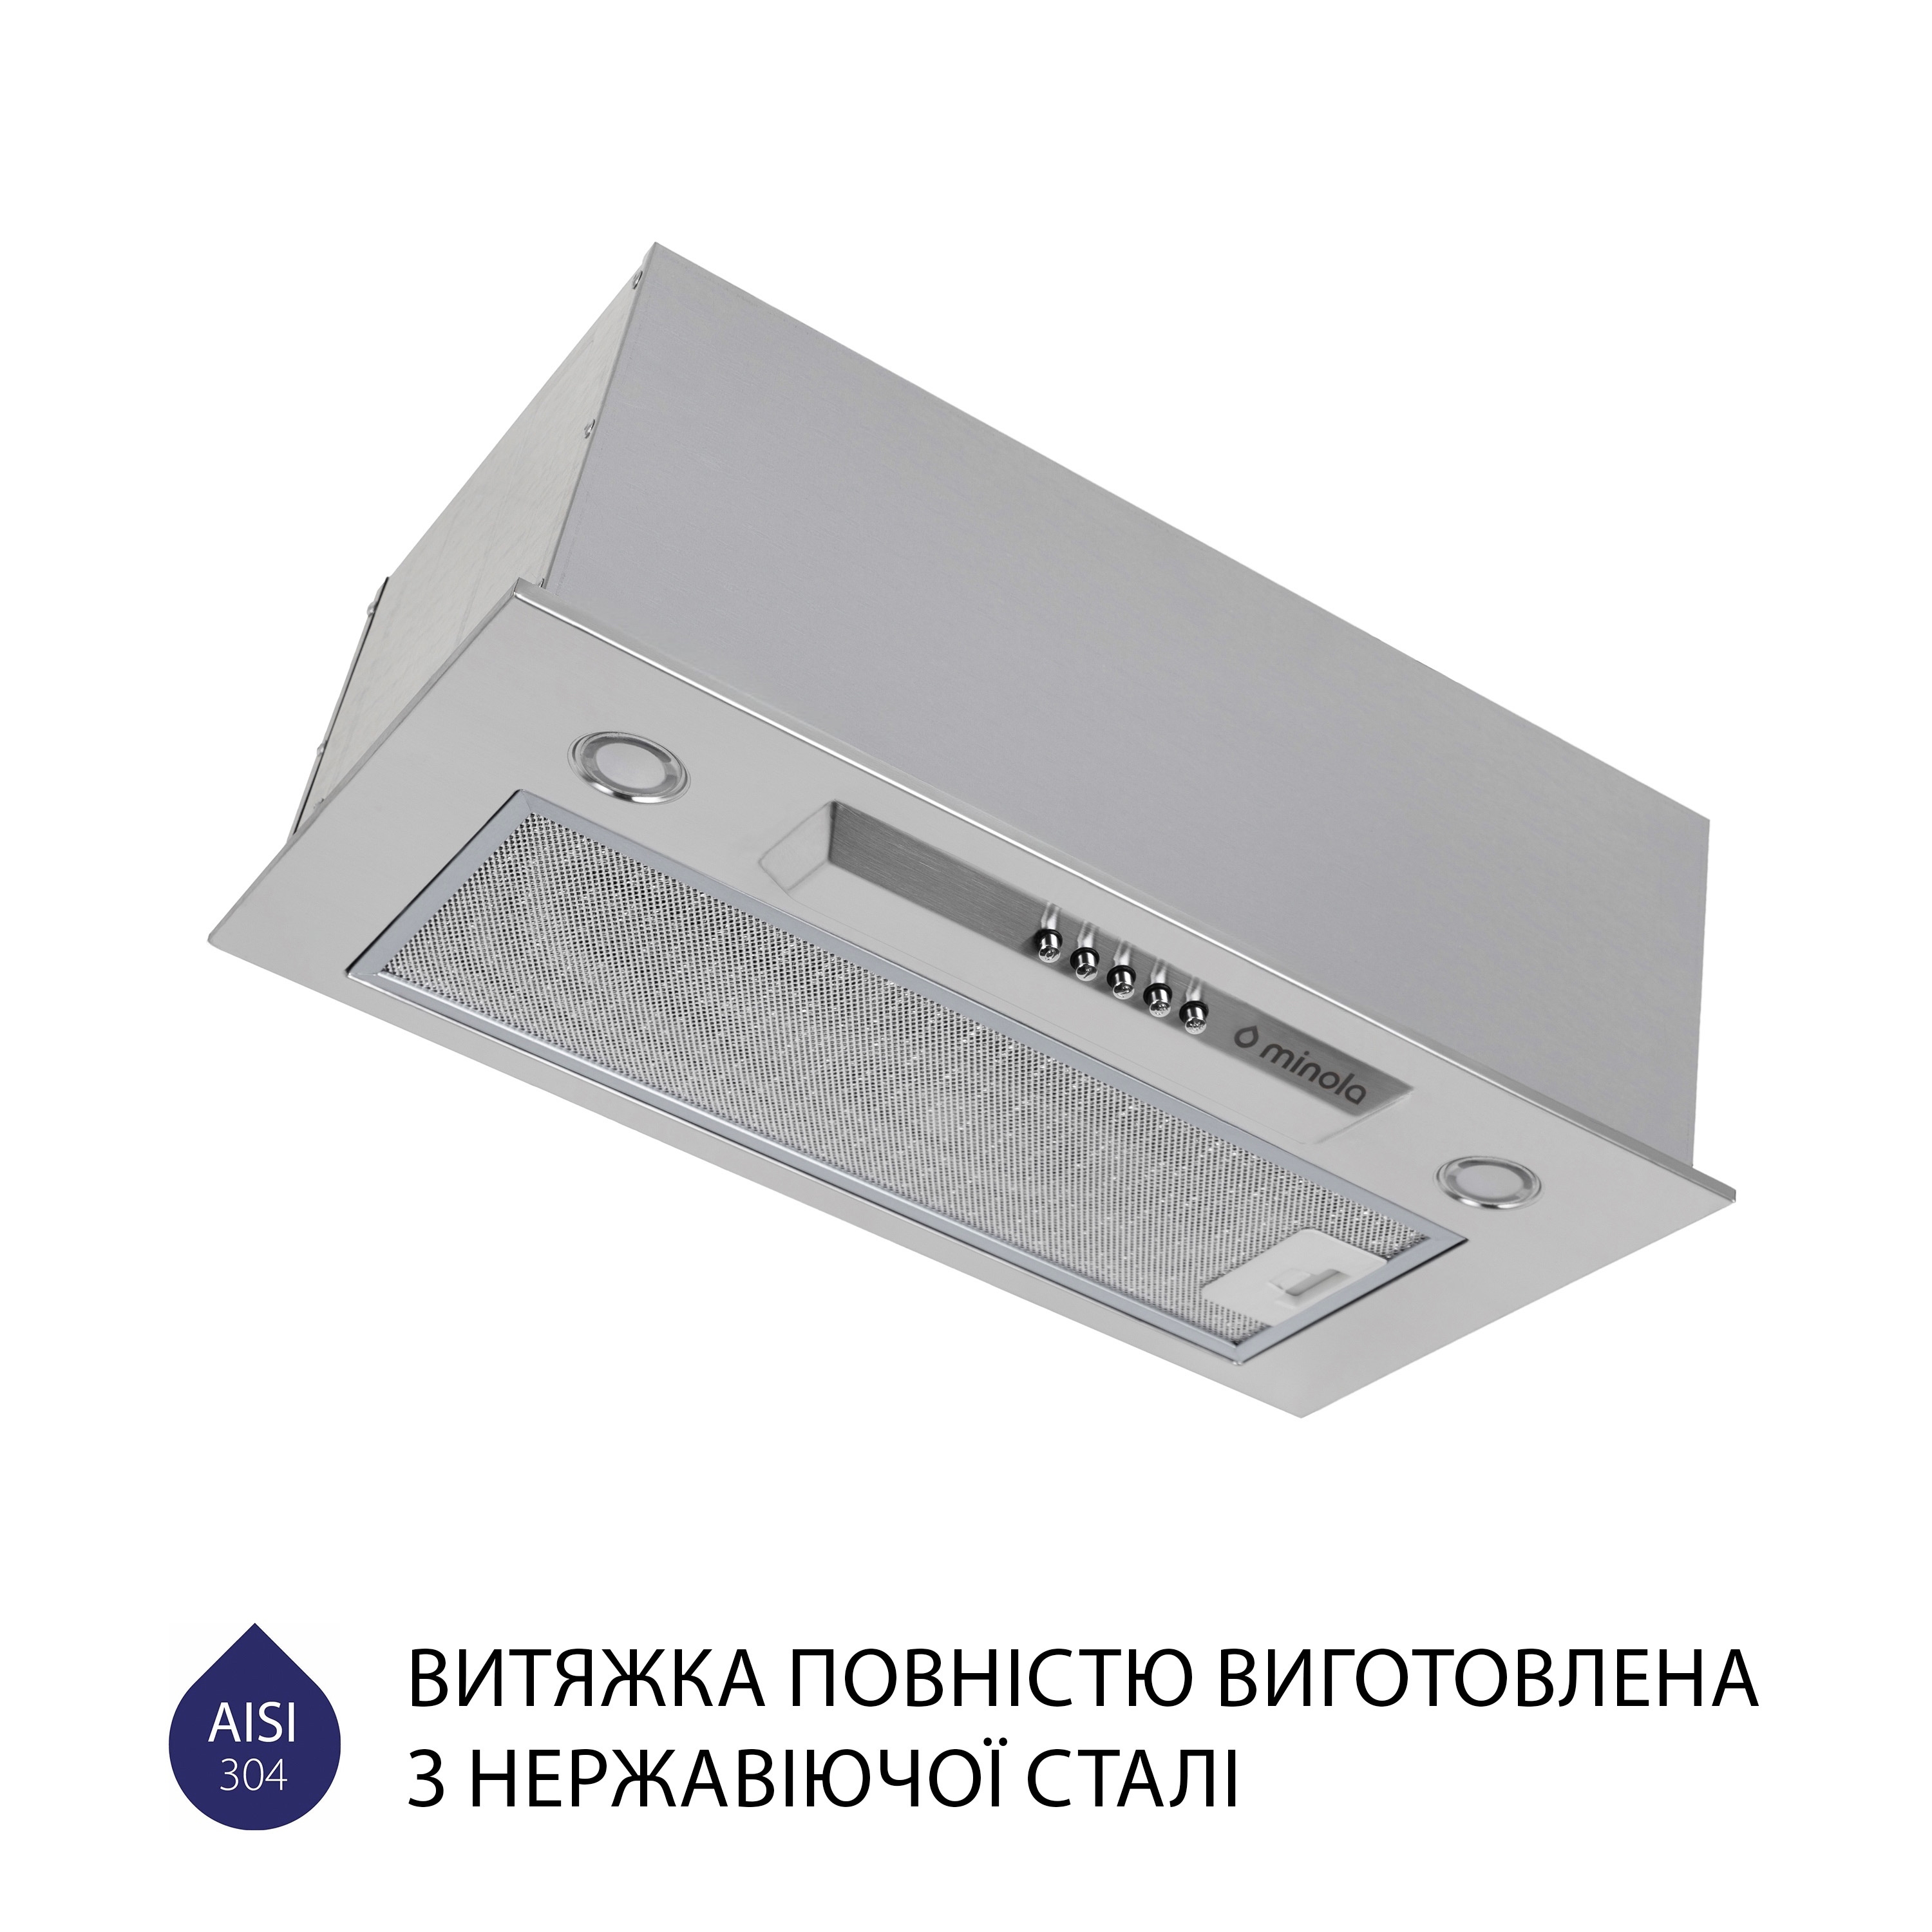 продаём Minola HBI 5324 I 800 LED в Украине - фото 4